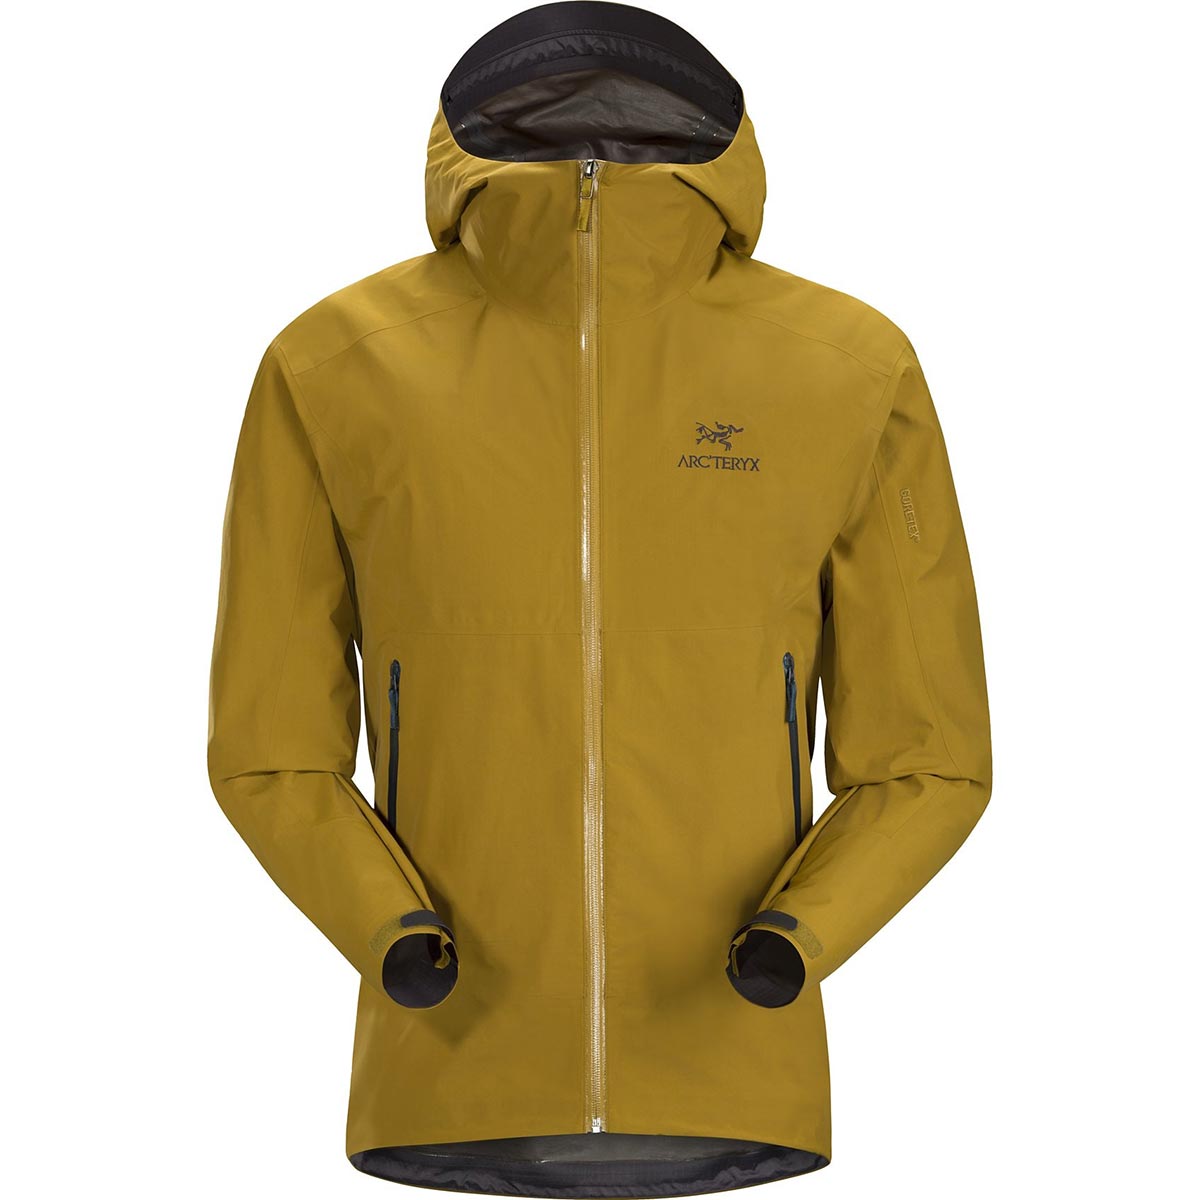 Zeta SL Jacket, men's, discontinued Fall 2019 colors